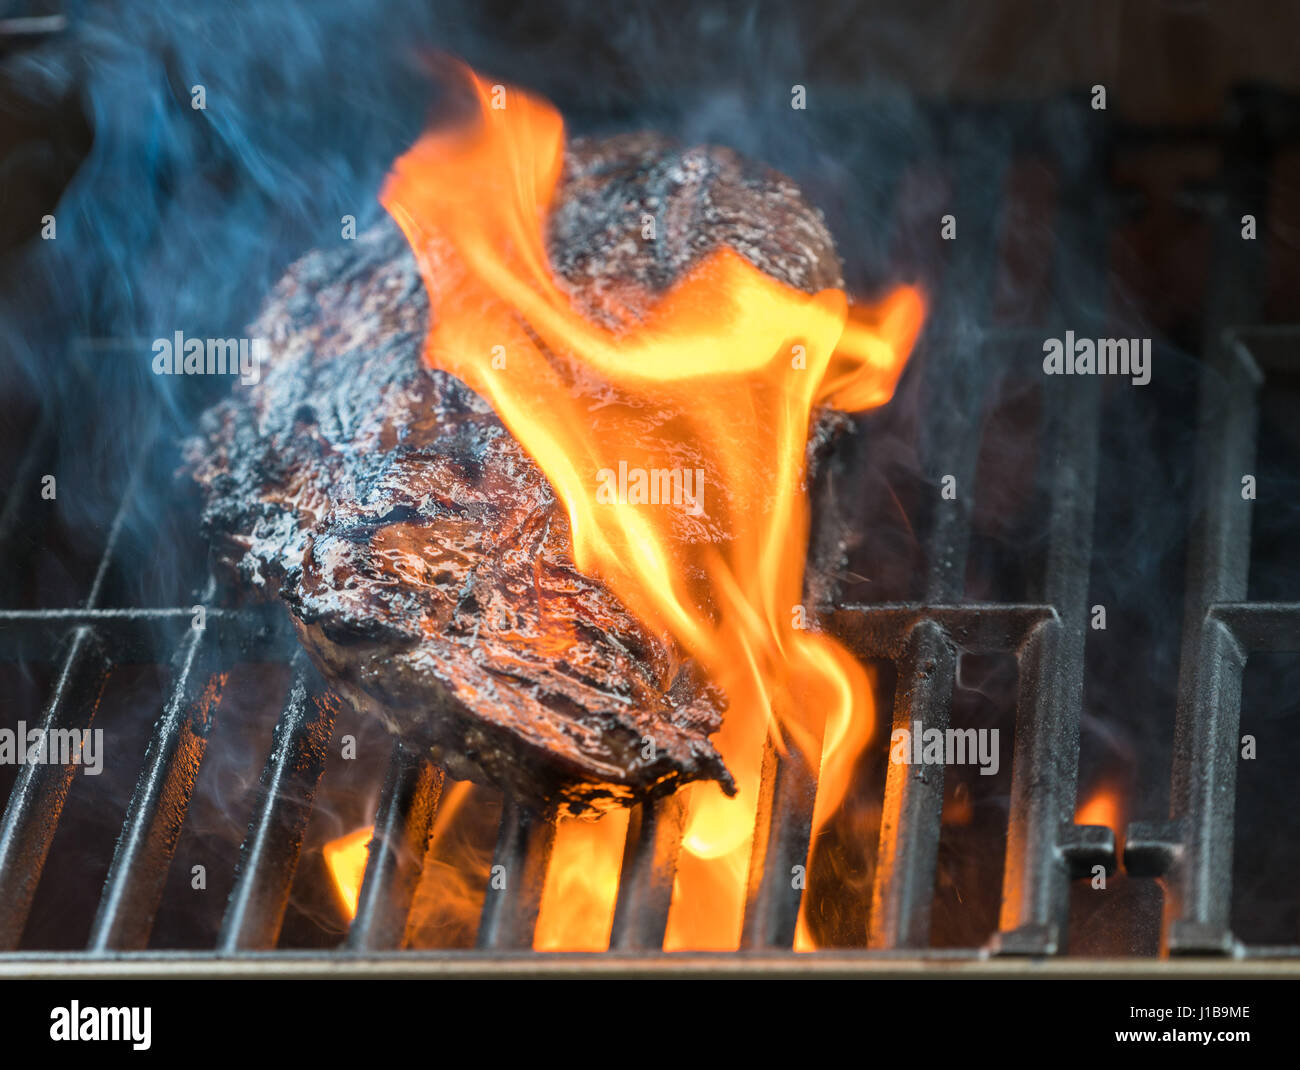 Kochen auf einem Grillplatz in der Nähe von großen Stück Rindfleisch Steak flaming Stockfoto